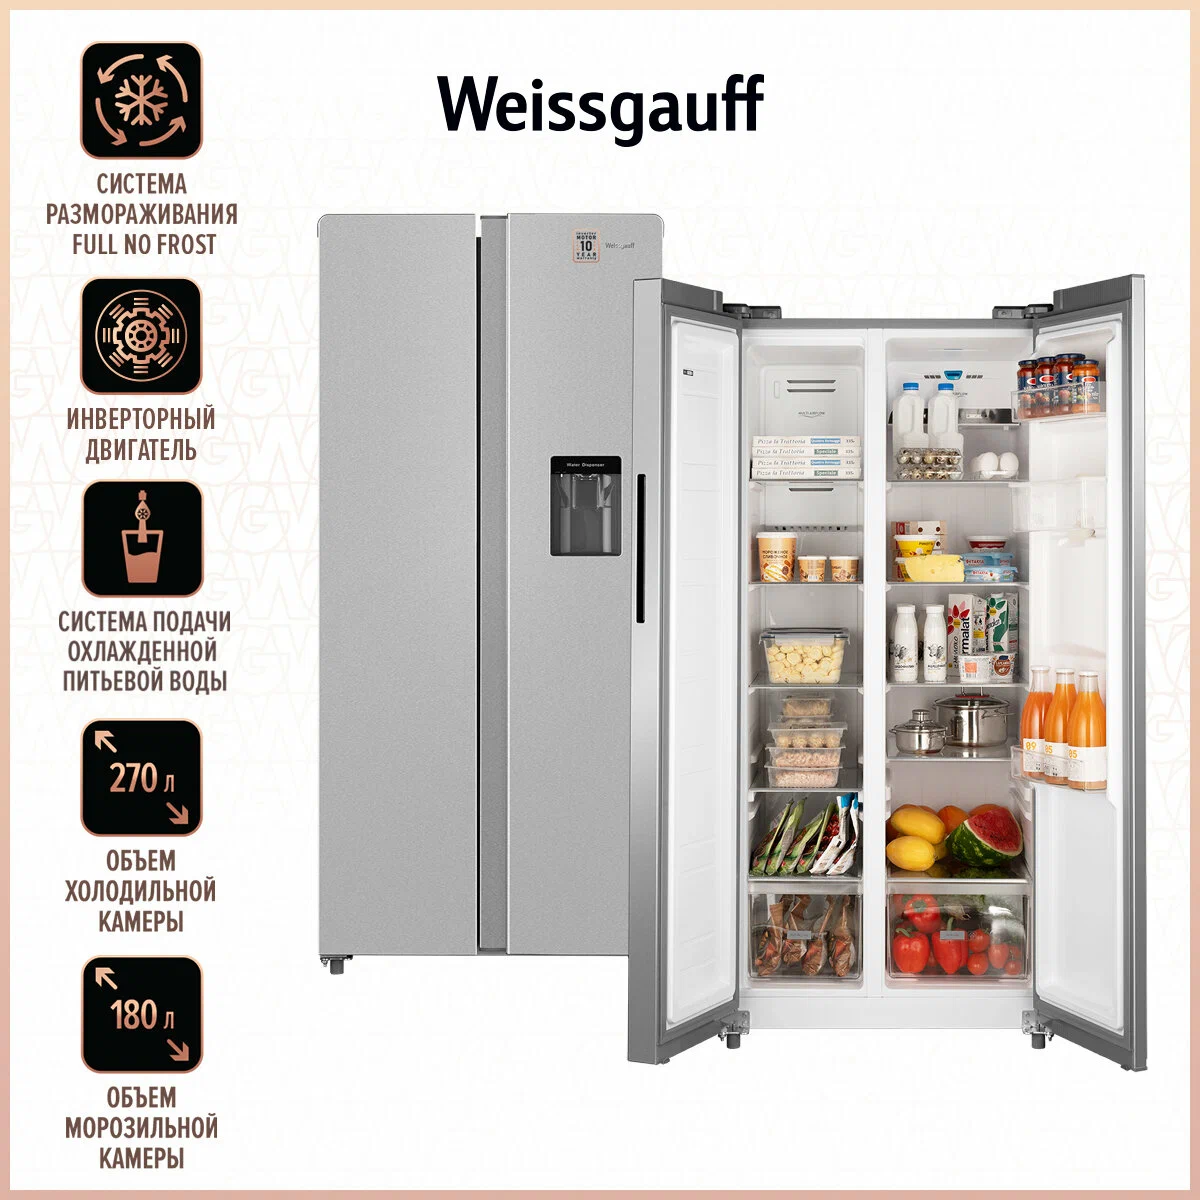 Холодильник Weissgauff WSBS 600 X серебристый холодильник weissgauff wsbs 509 nfbx